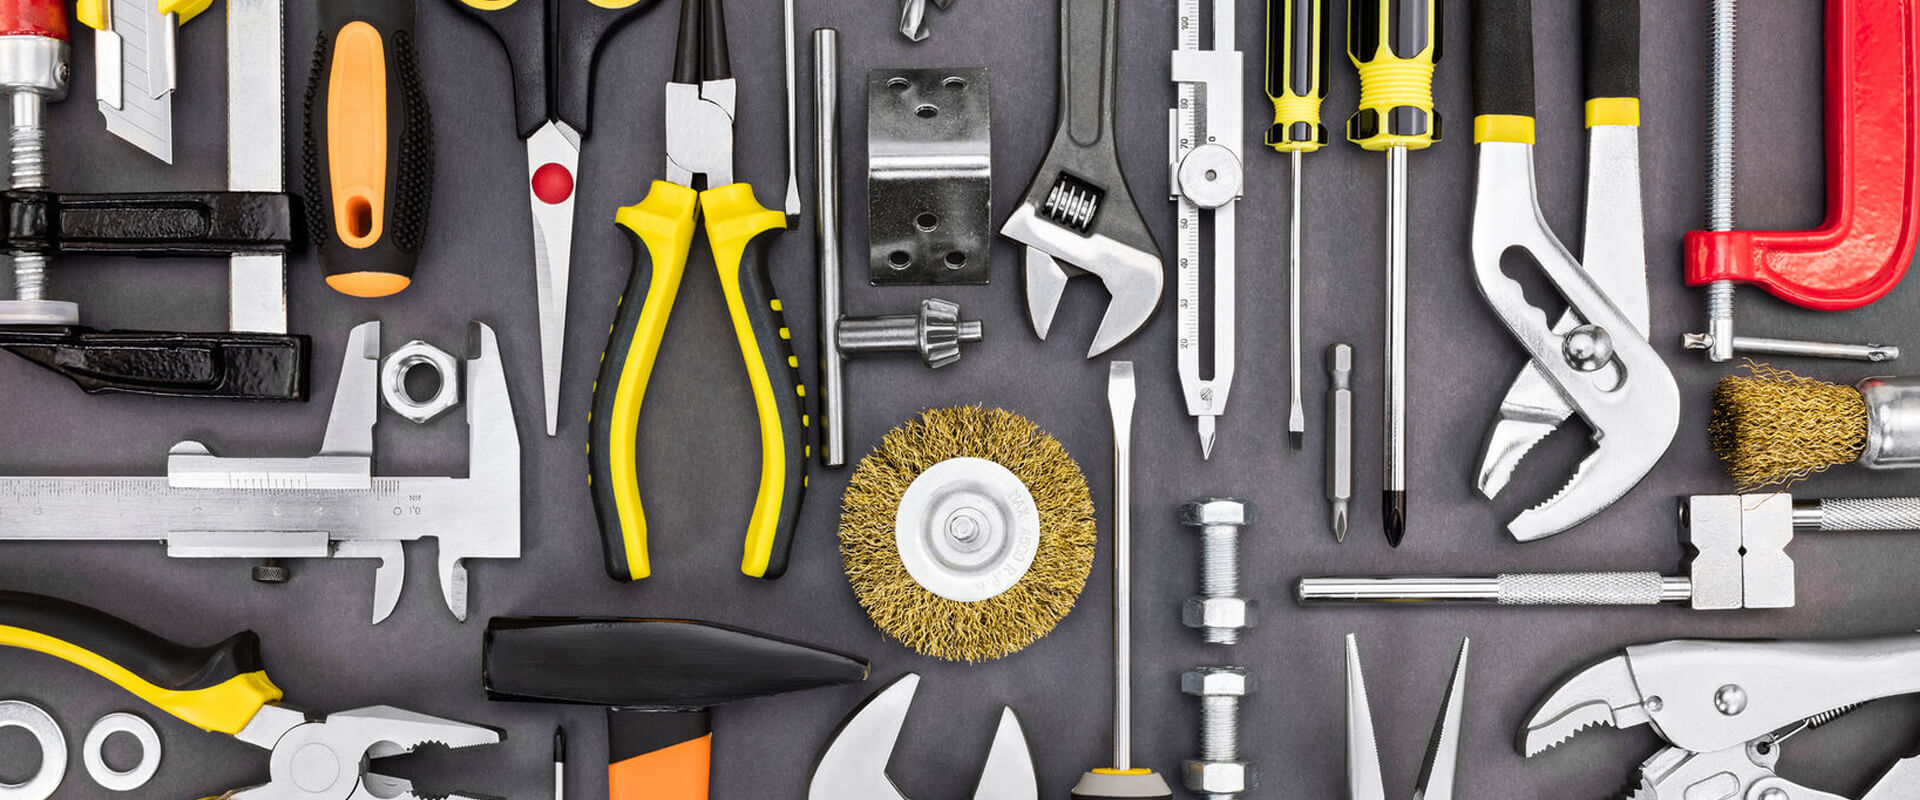 Creative tools. Строительные инструменты. Инструменты для ремонта. Сантехнический инструмент. Строительные приспособления.